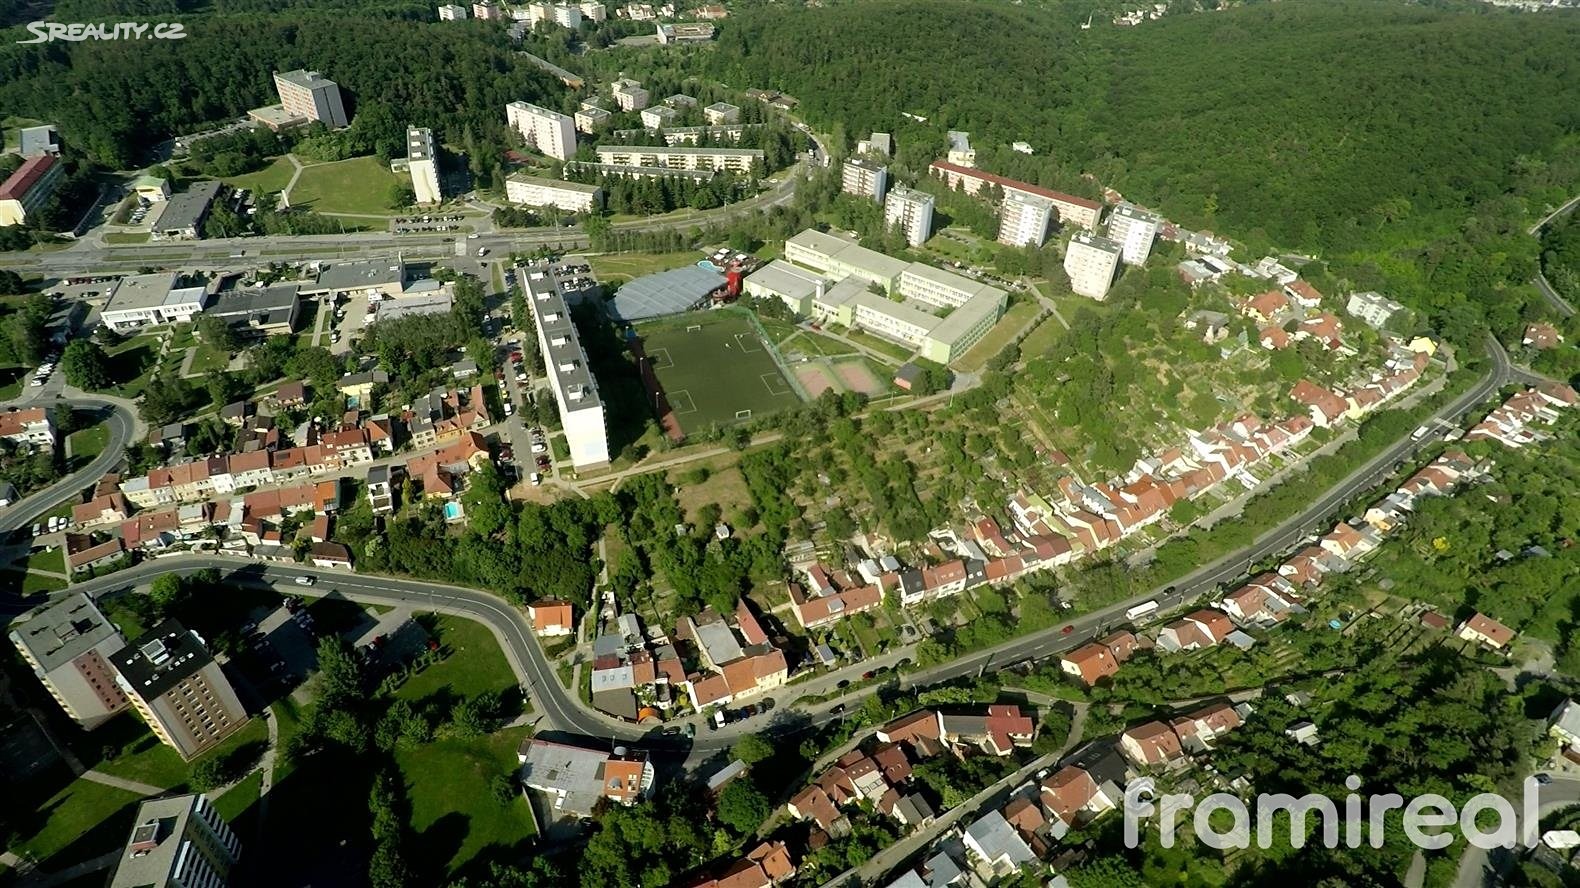 Pronájem bytu 3+1 60 m², Voříškova, Brno - Kohoutovice